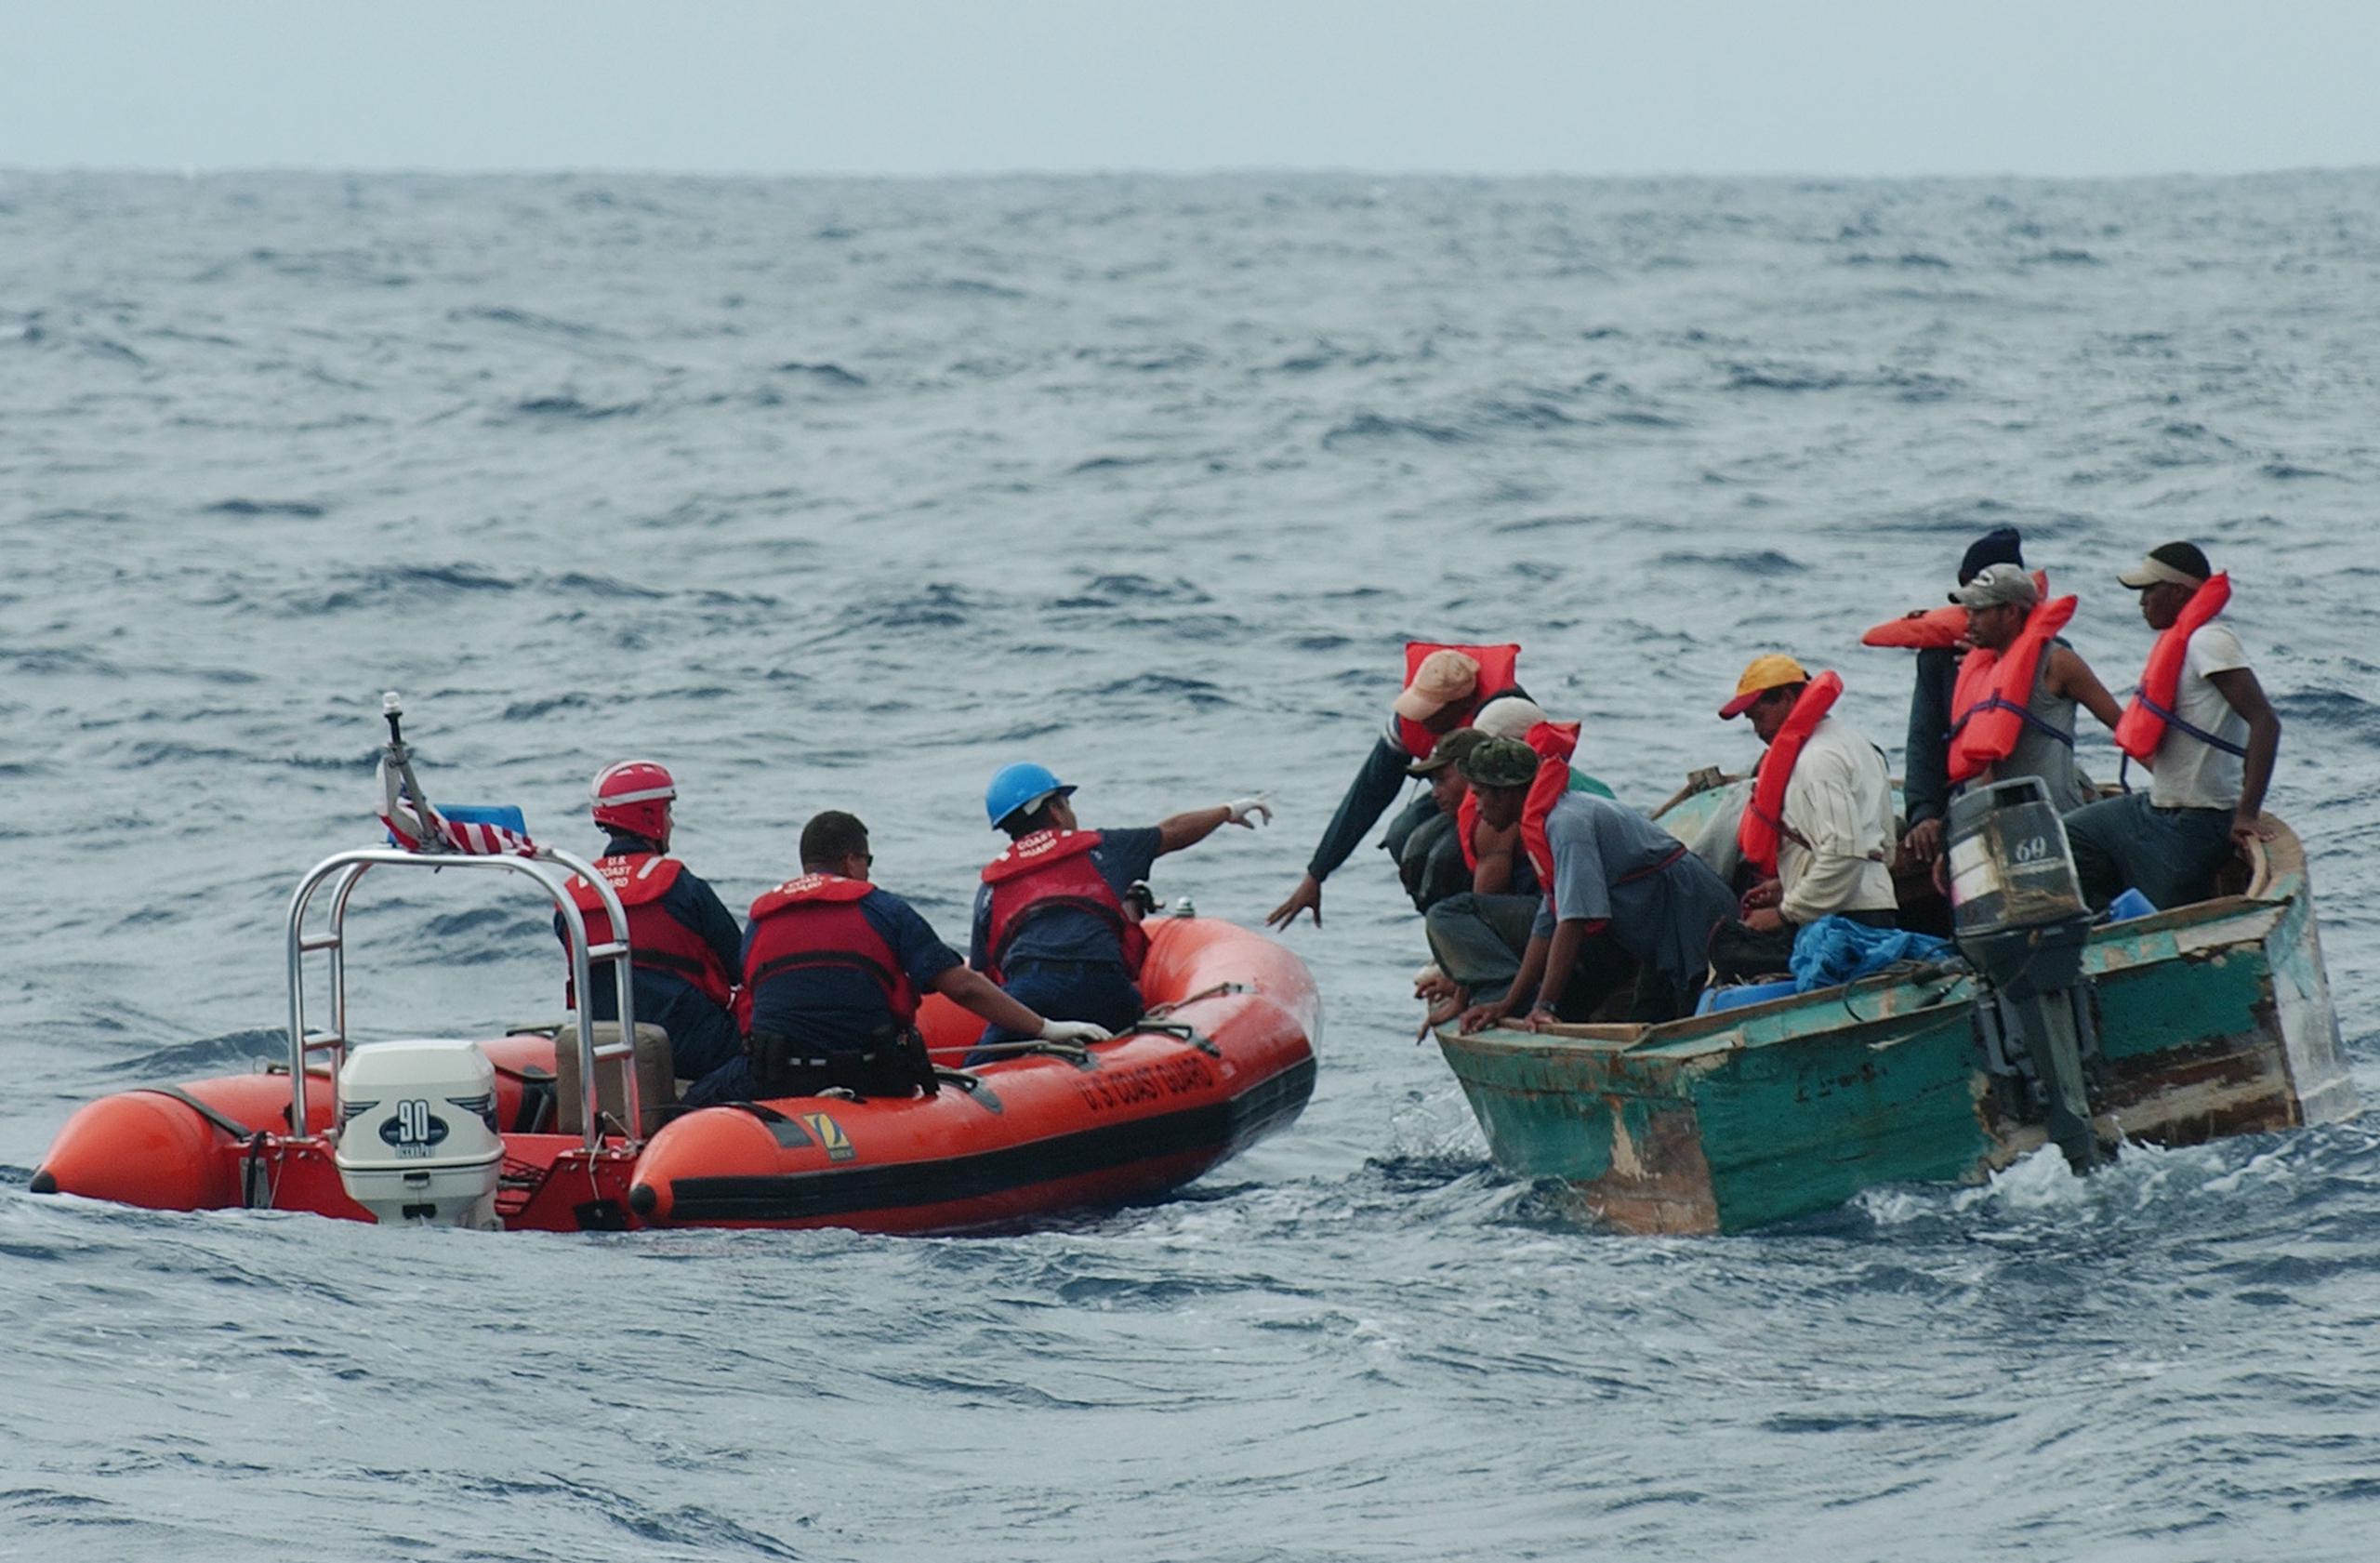 Los individuos se lanzaron al mar el jueves en la mañana, cuando una embarcación de la Guardia Costera intervino con la yola en la que viajaban.